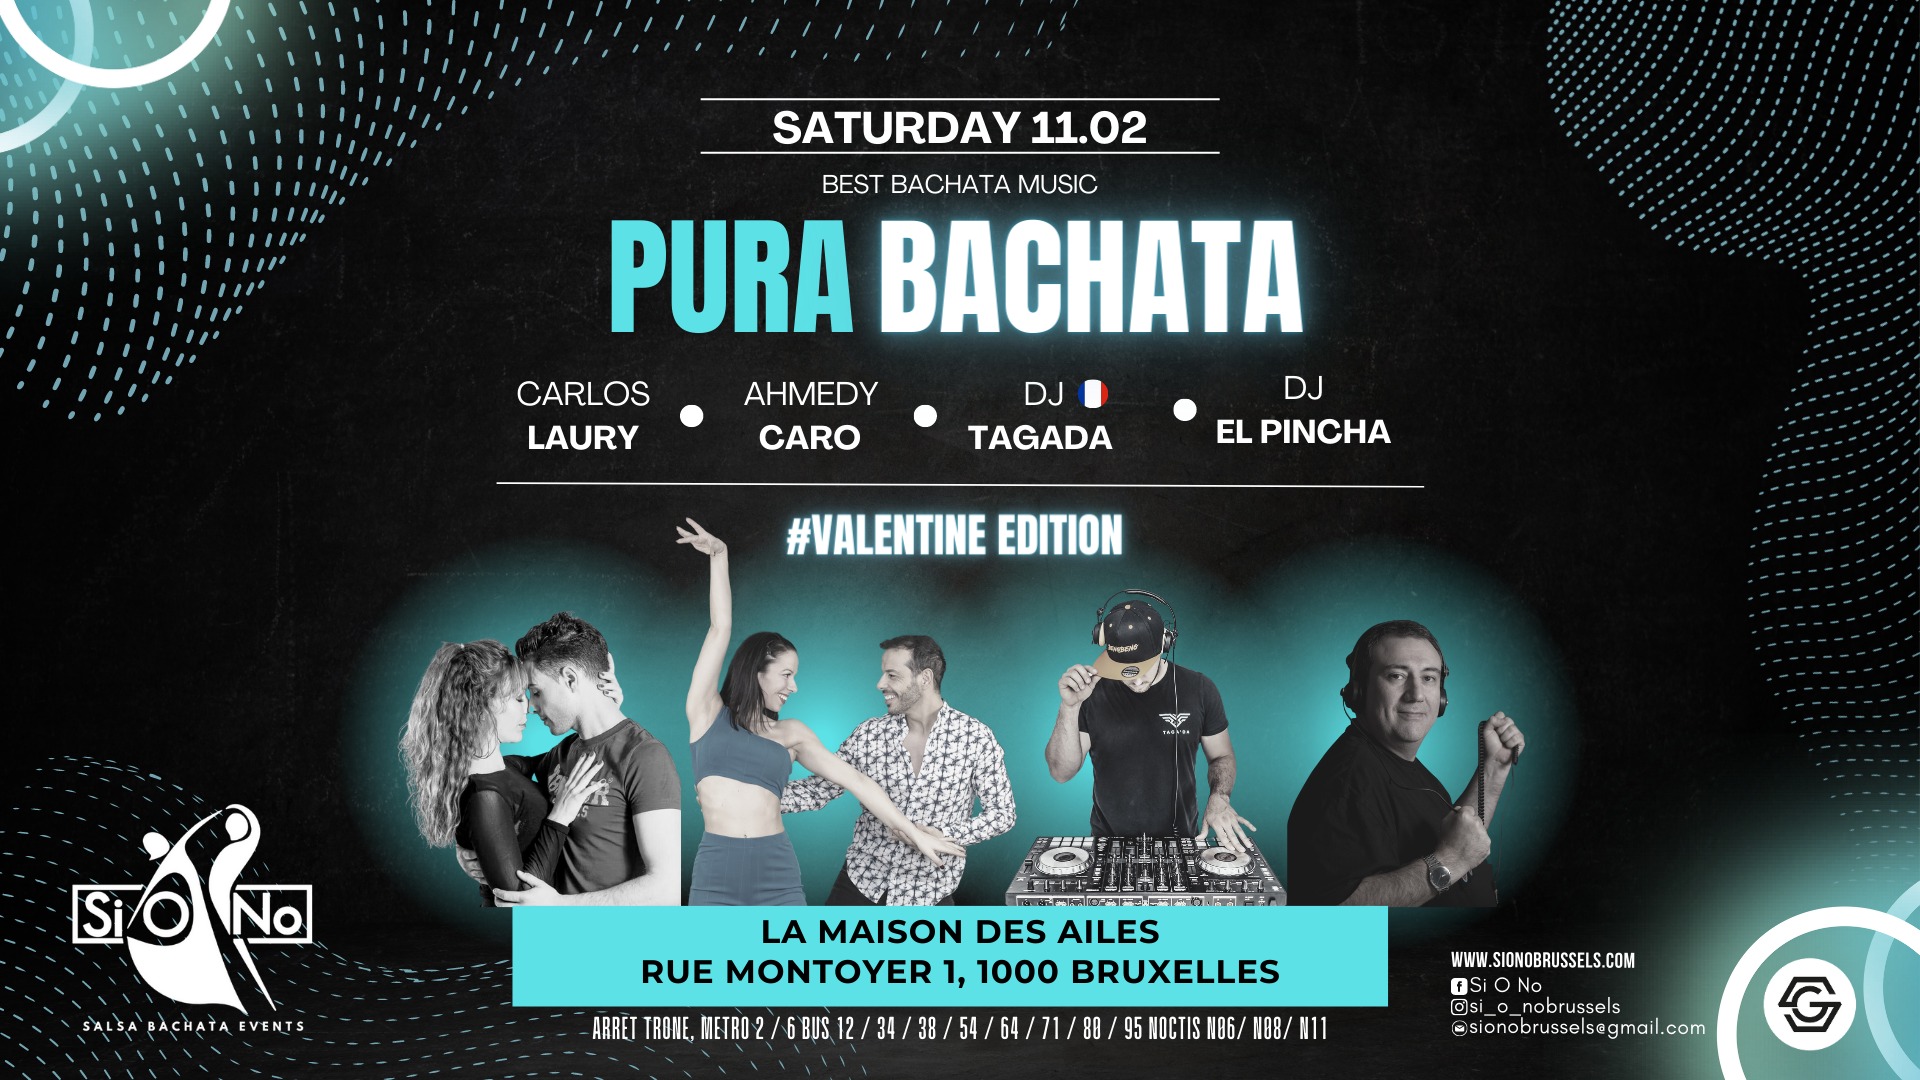 Pura Bachata x Valentine Edition photo